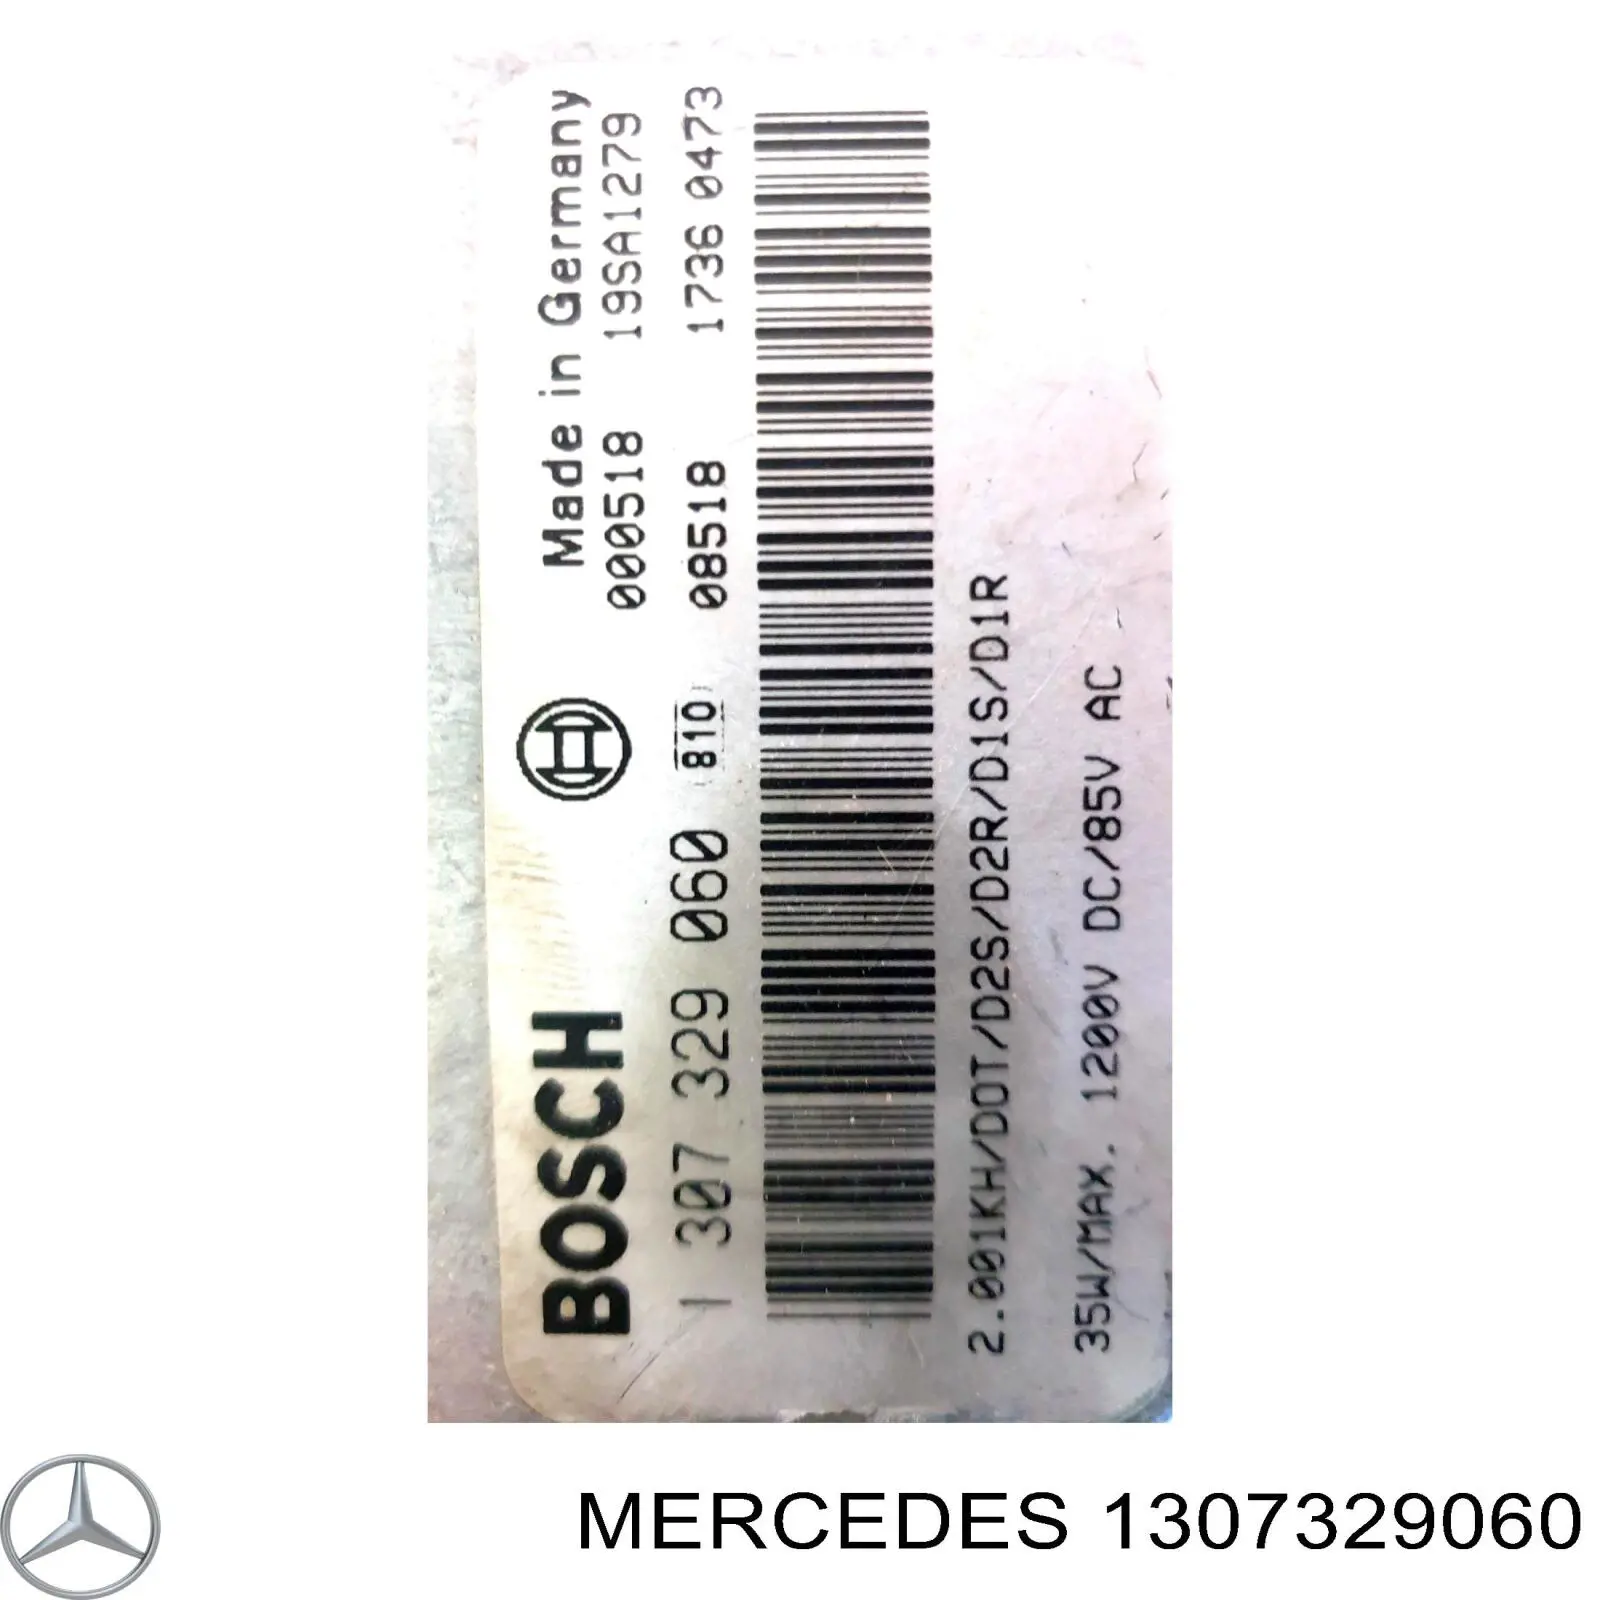 A203820938580 Mercedes bobina de reactancia, lámpara de descarga de gas